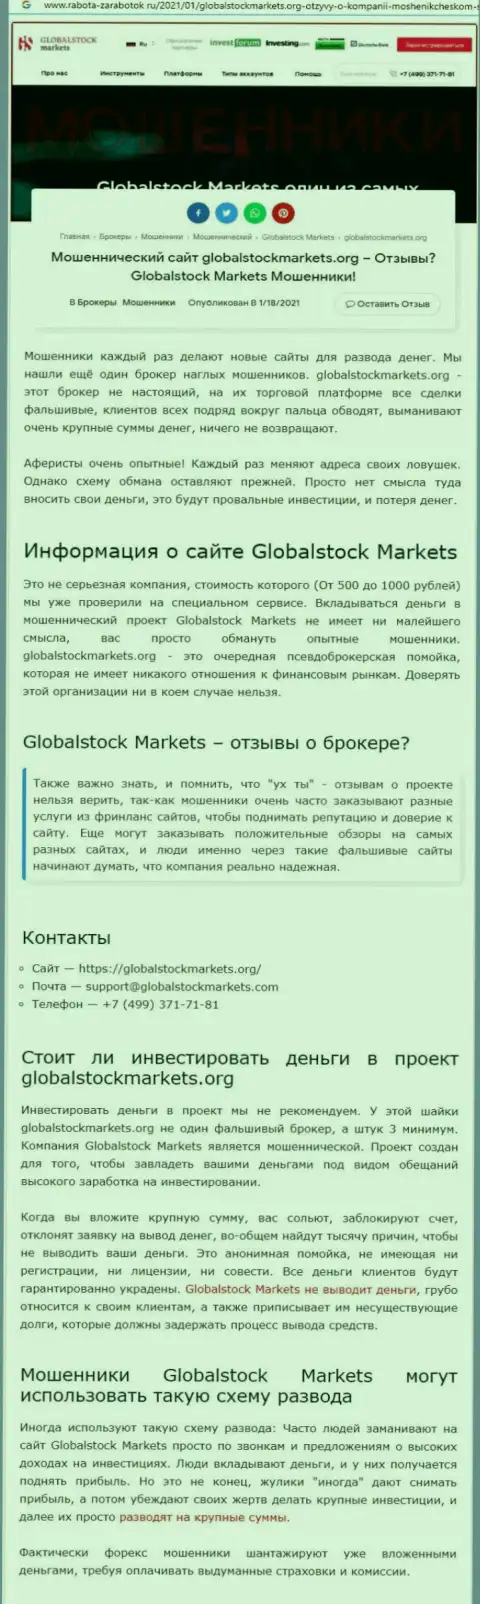 Global Stock Markets - это ОБМАН НА ДЕНЬГИ !!! БУДЬТЕ ОЧЕНЬ ВНИМАТЕЛЬНЫ (статья с разбором